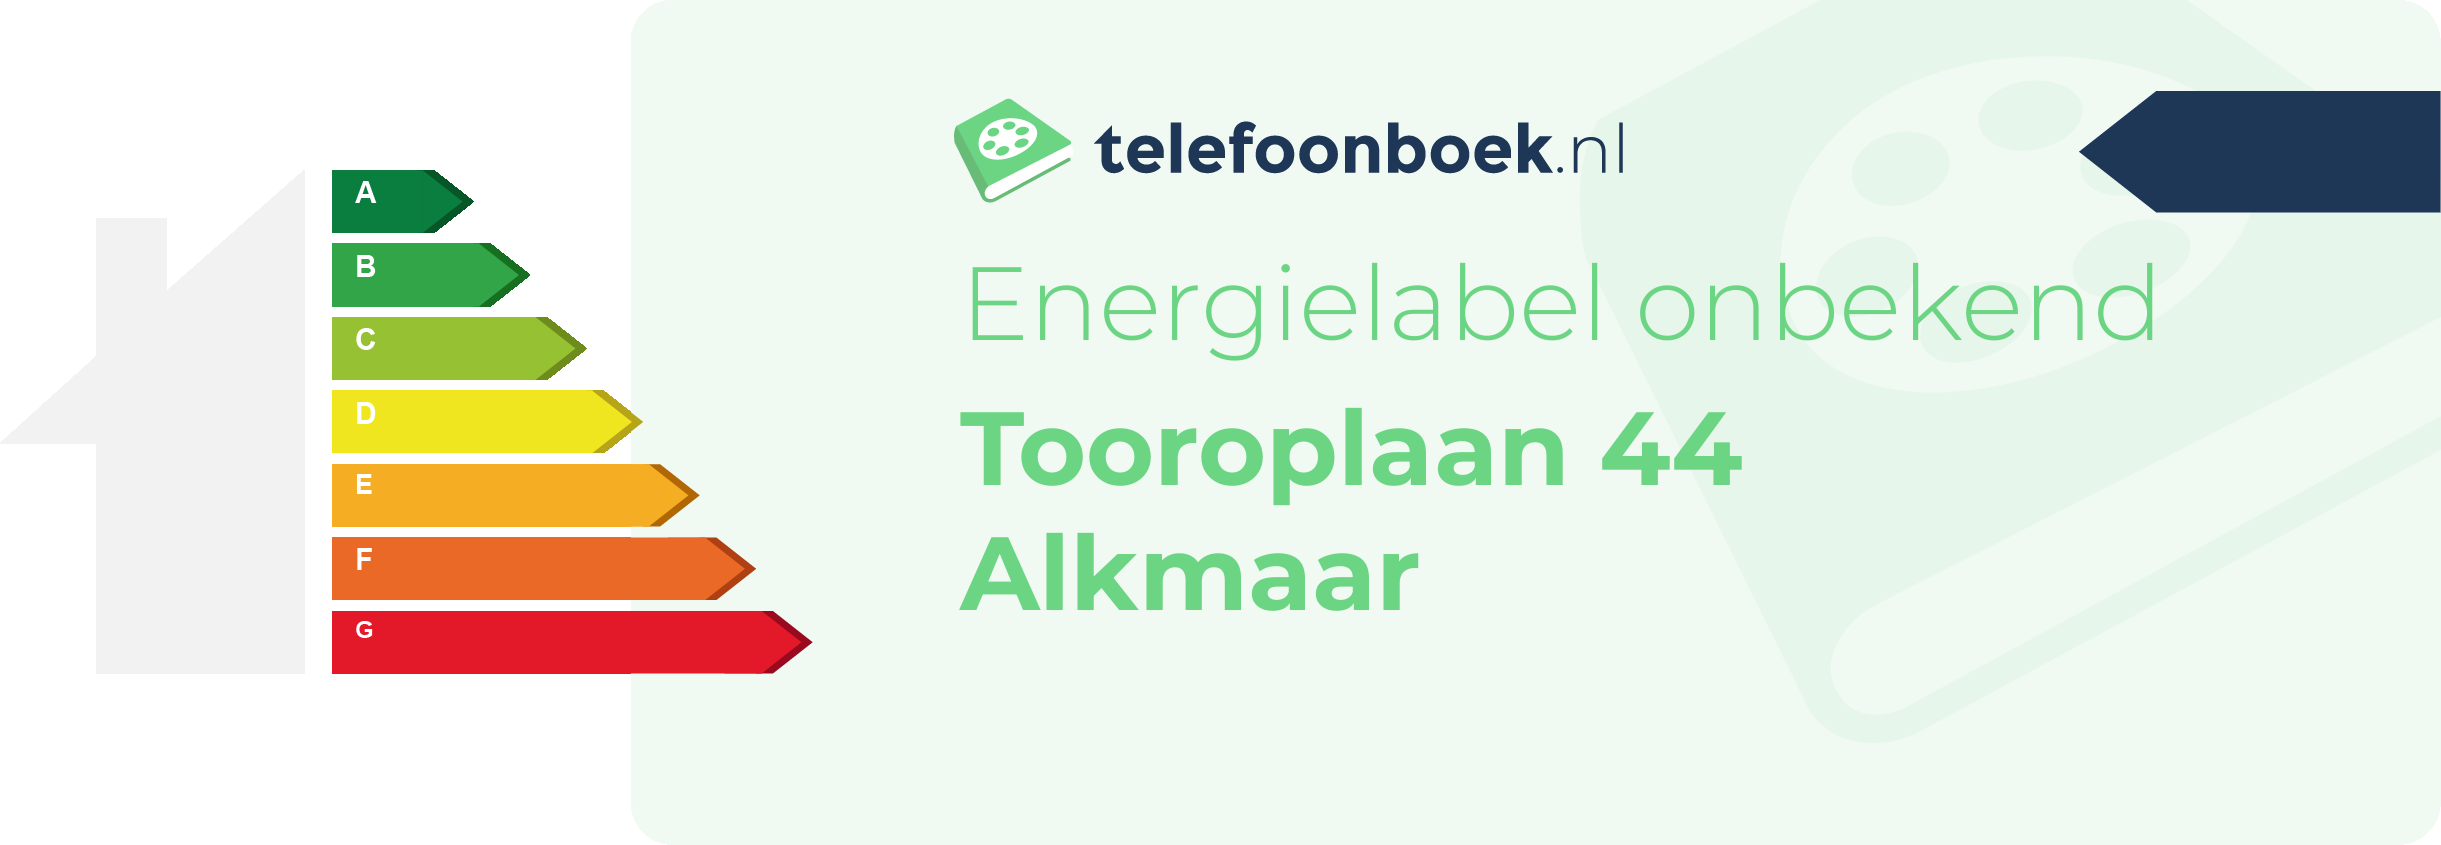 Energielabel Tooroplaan 44 Alkmaar